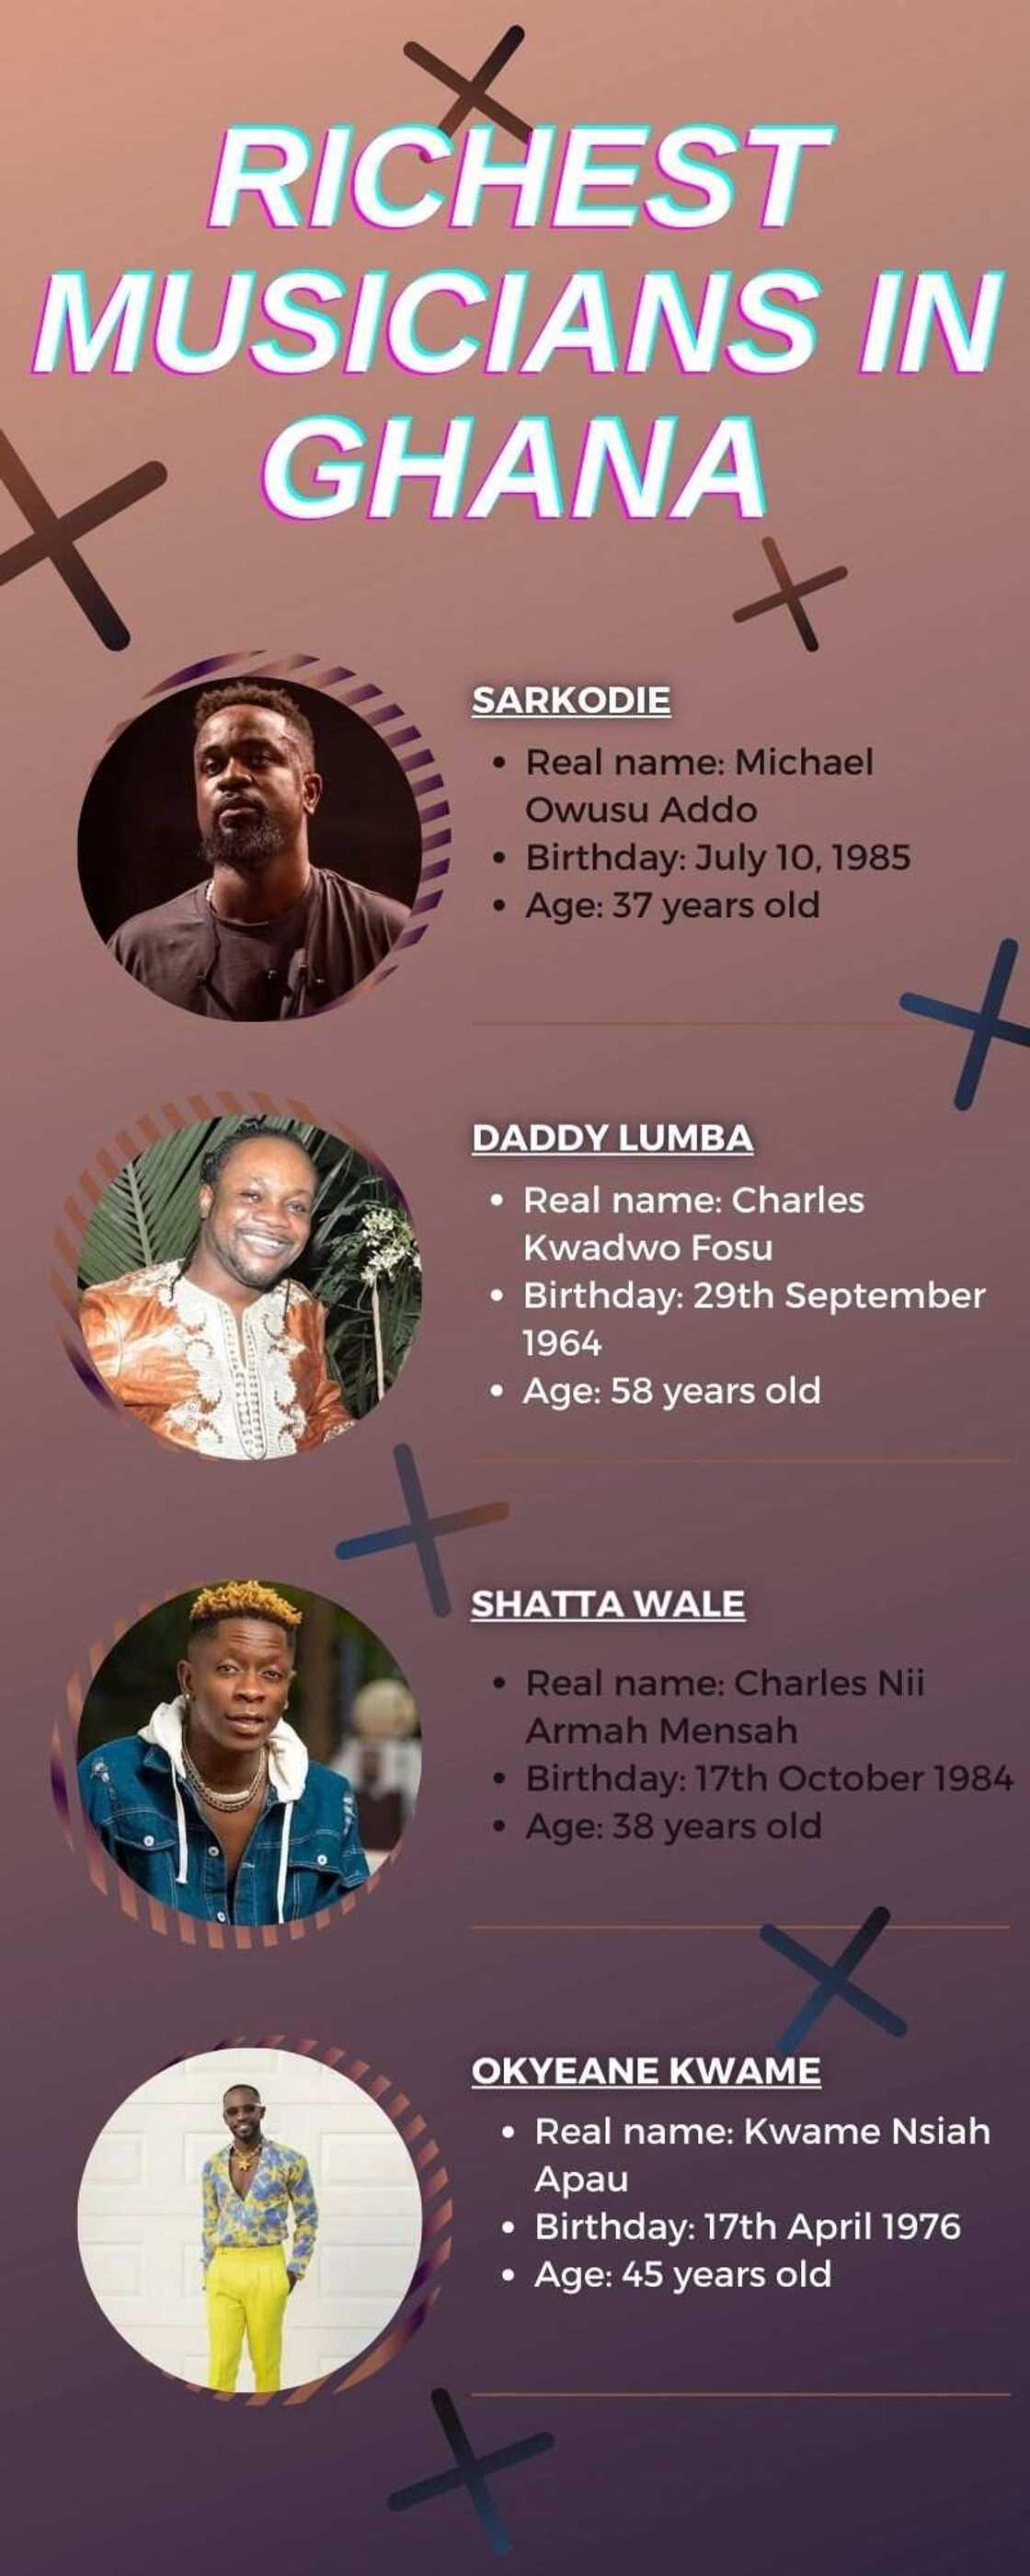 Richest musicians in Ghana